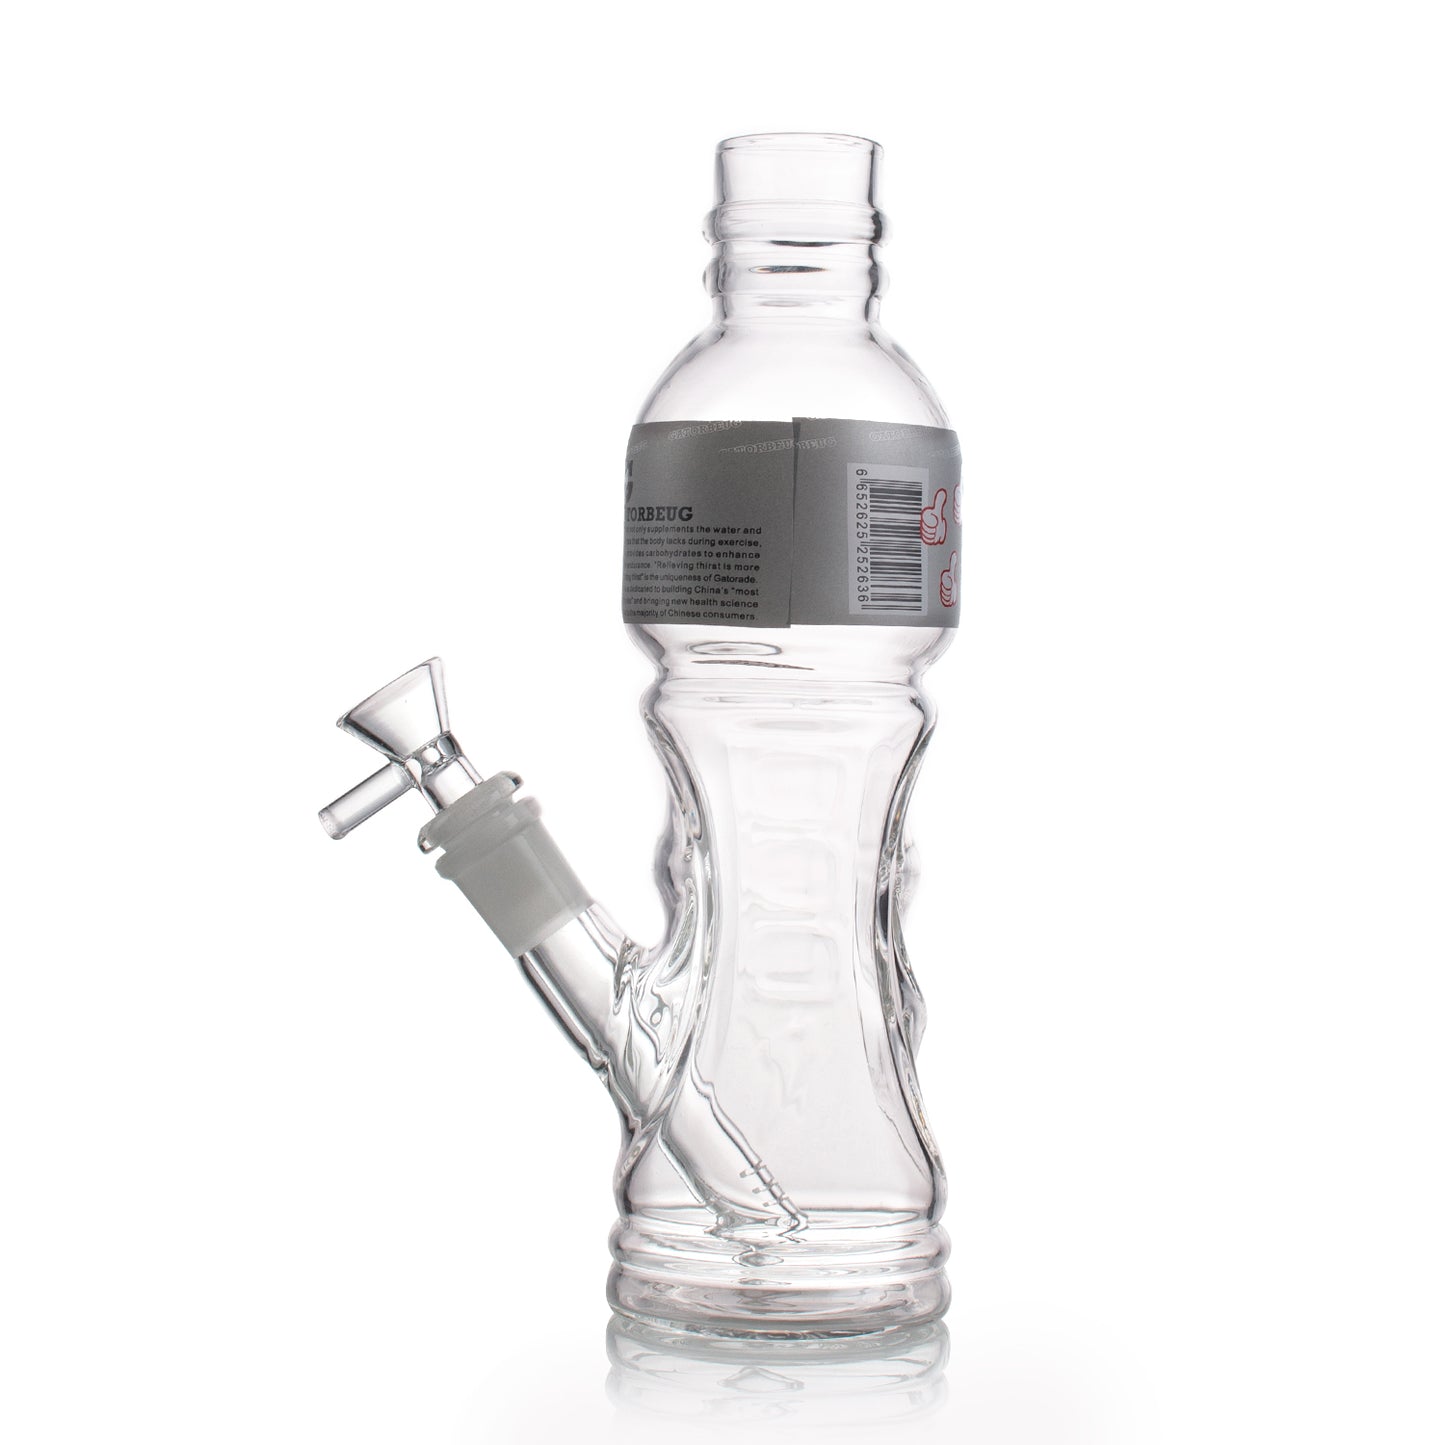 Solid Glass Bottle Shape Waterpipe 24cm